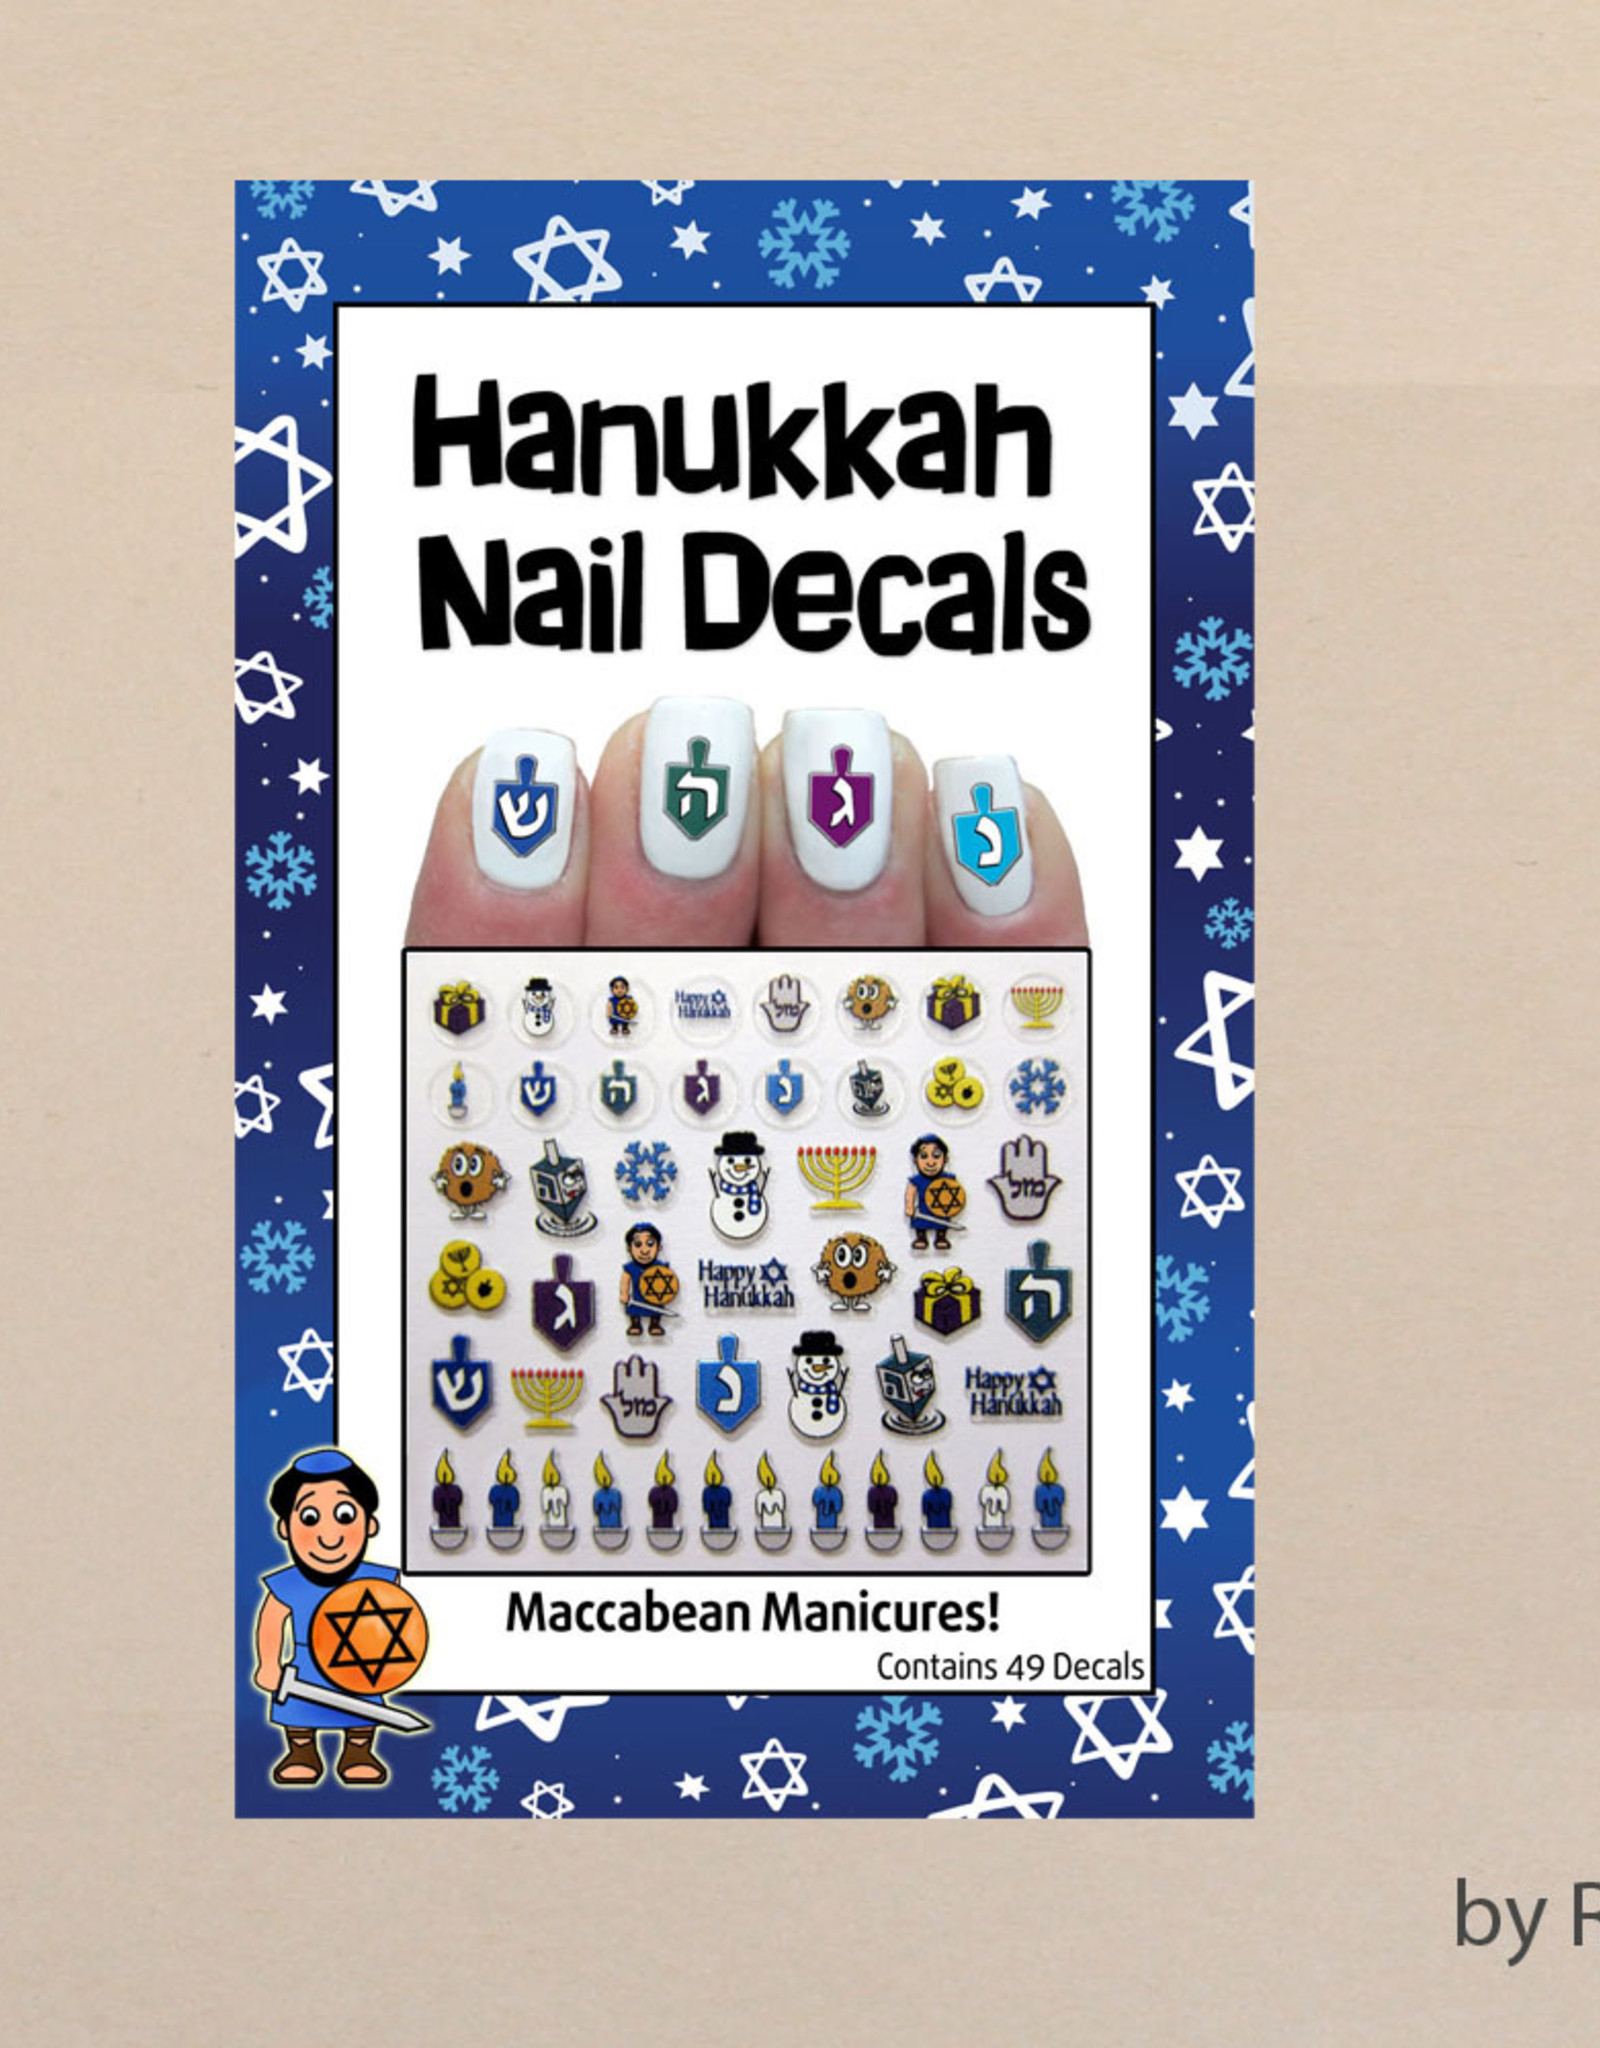 Chanukah, Hanukah Nail Decals